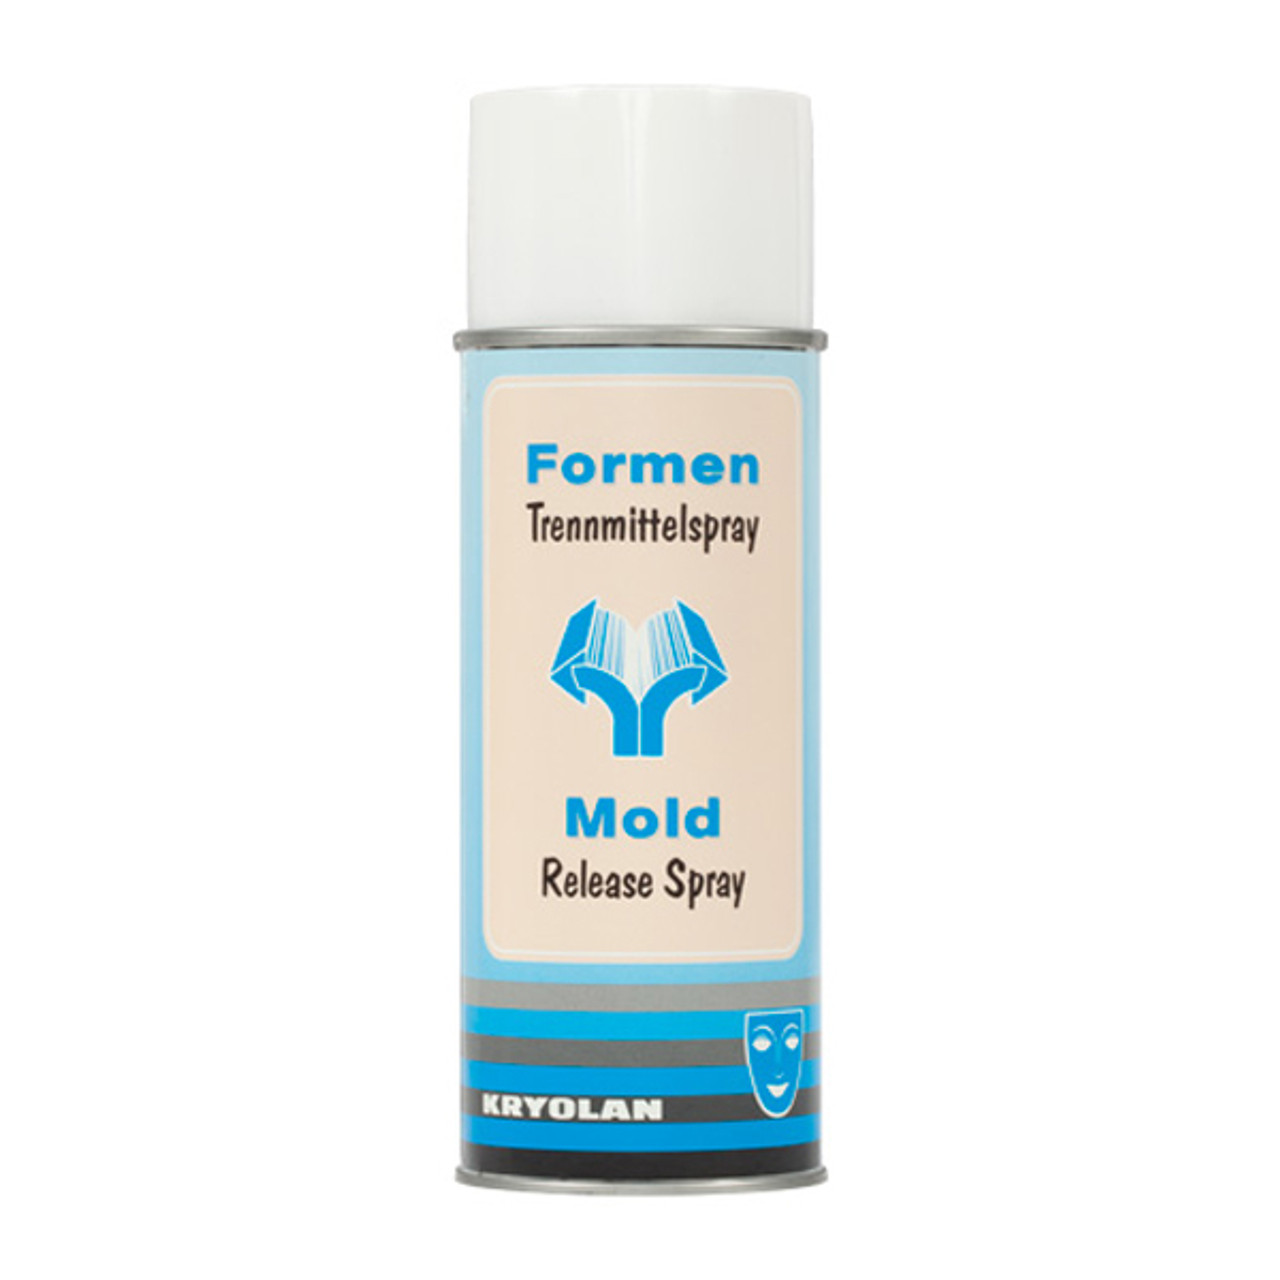 Kryolan Mold Release Spray - Norcostco, Inc.